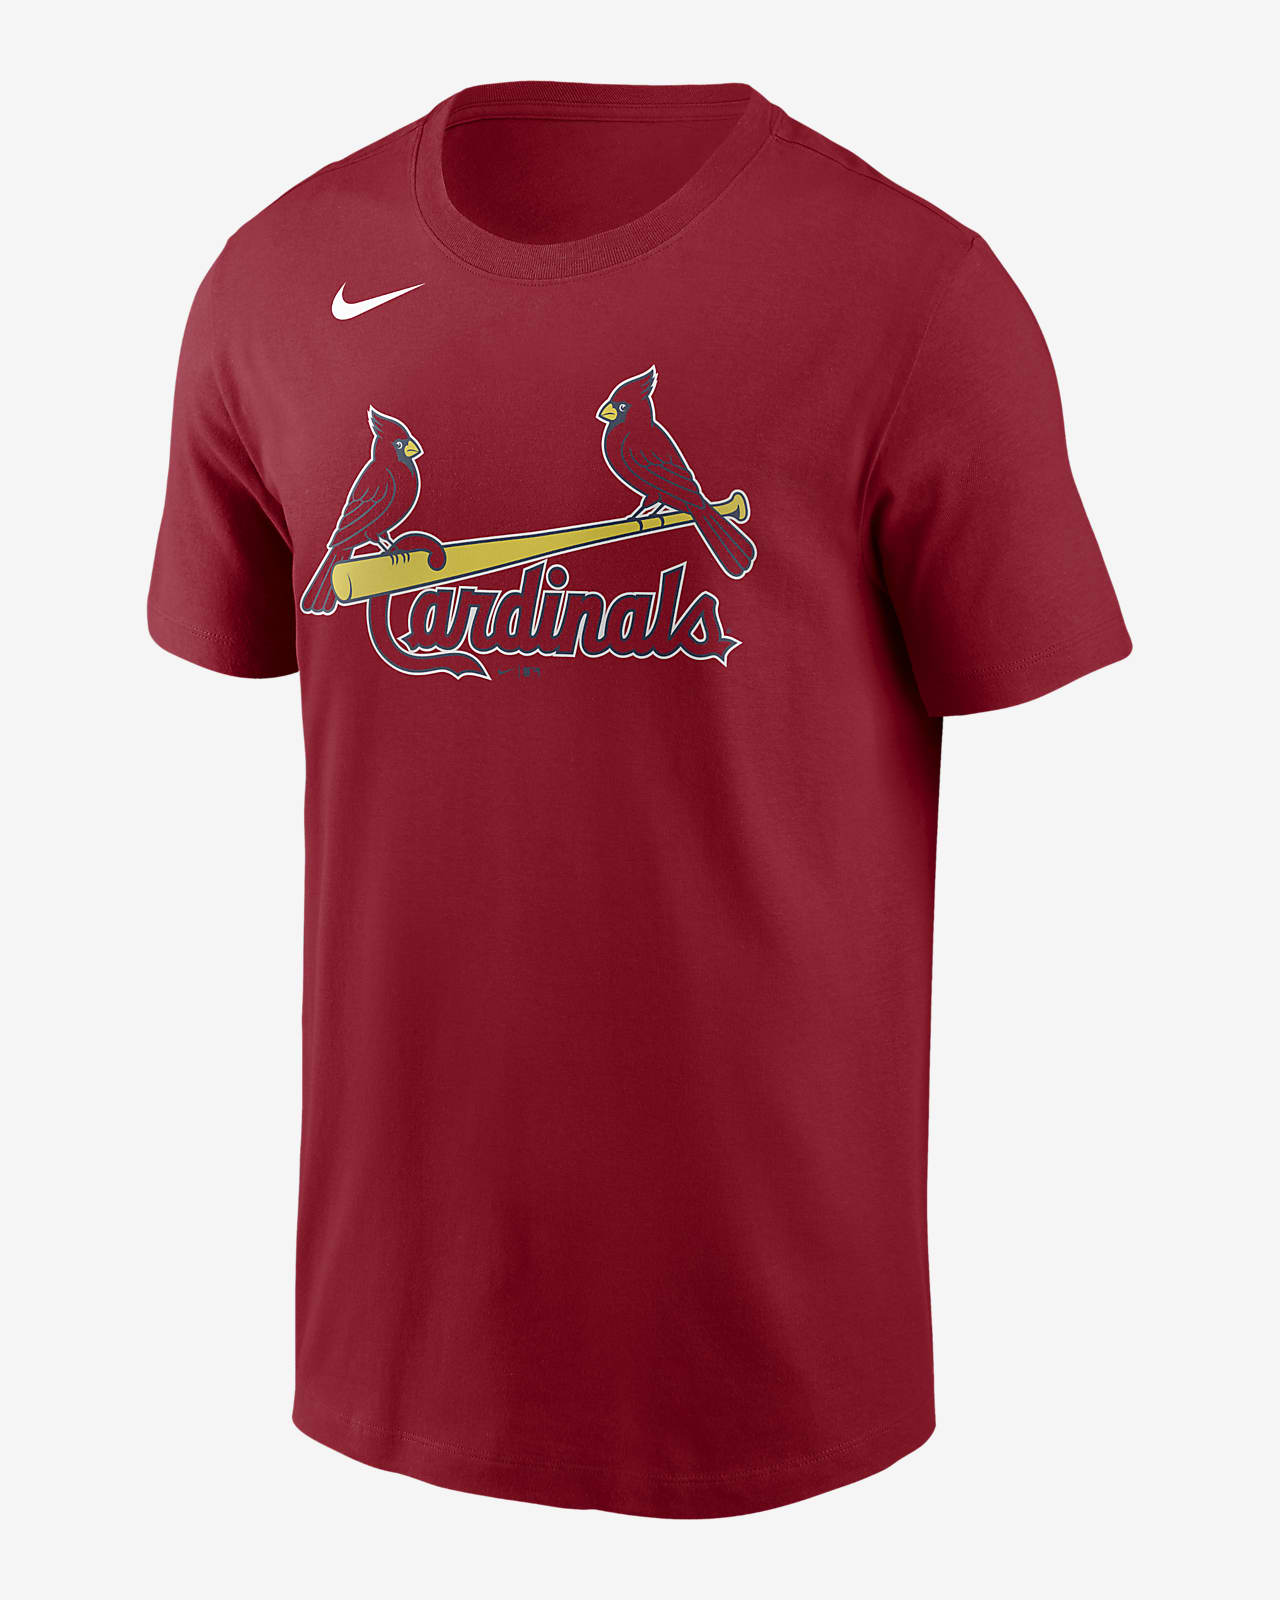 cardinals plus size shirts